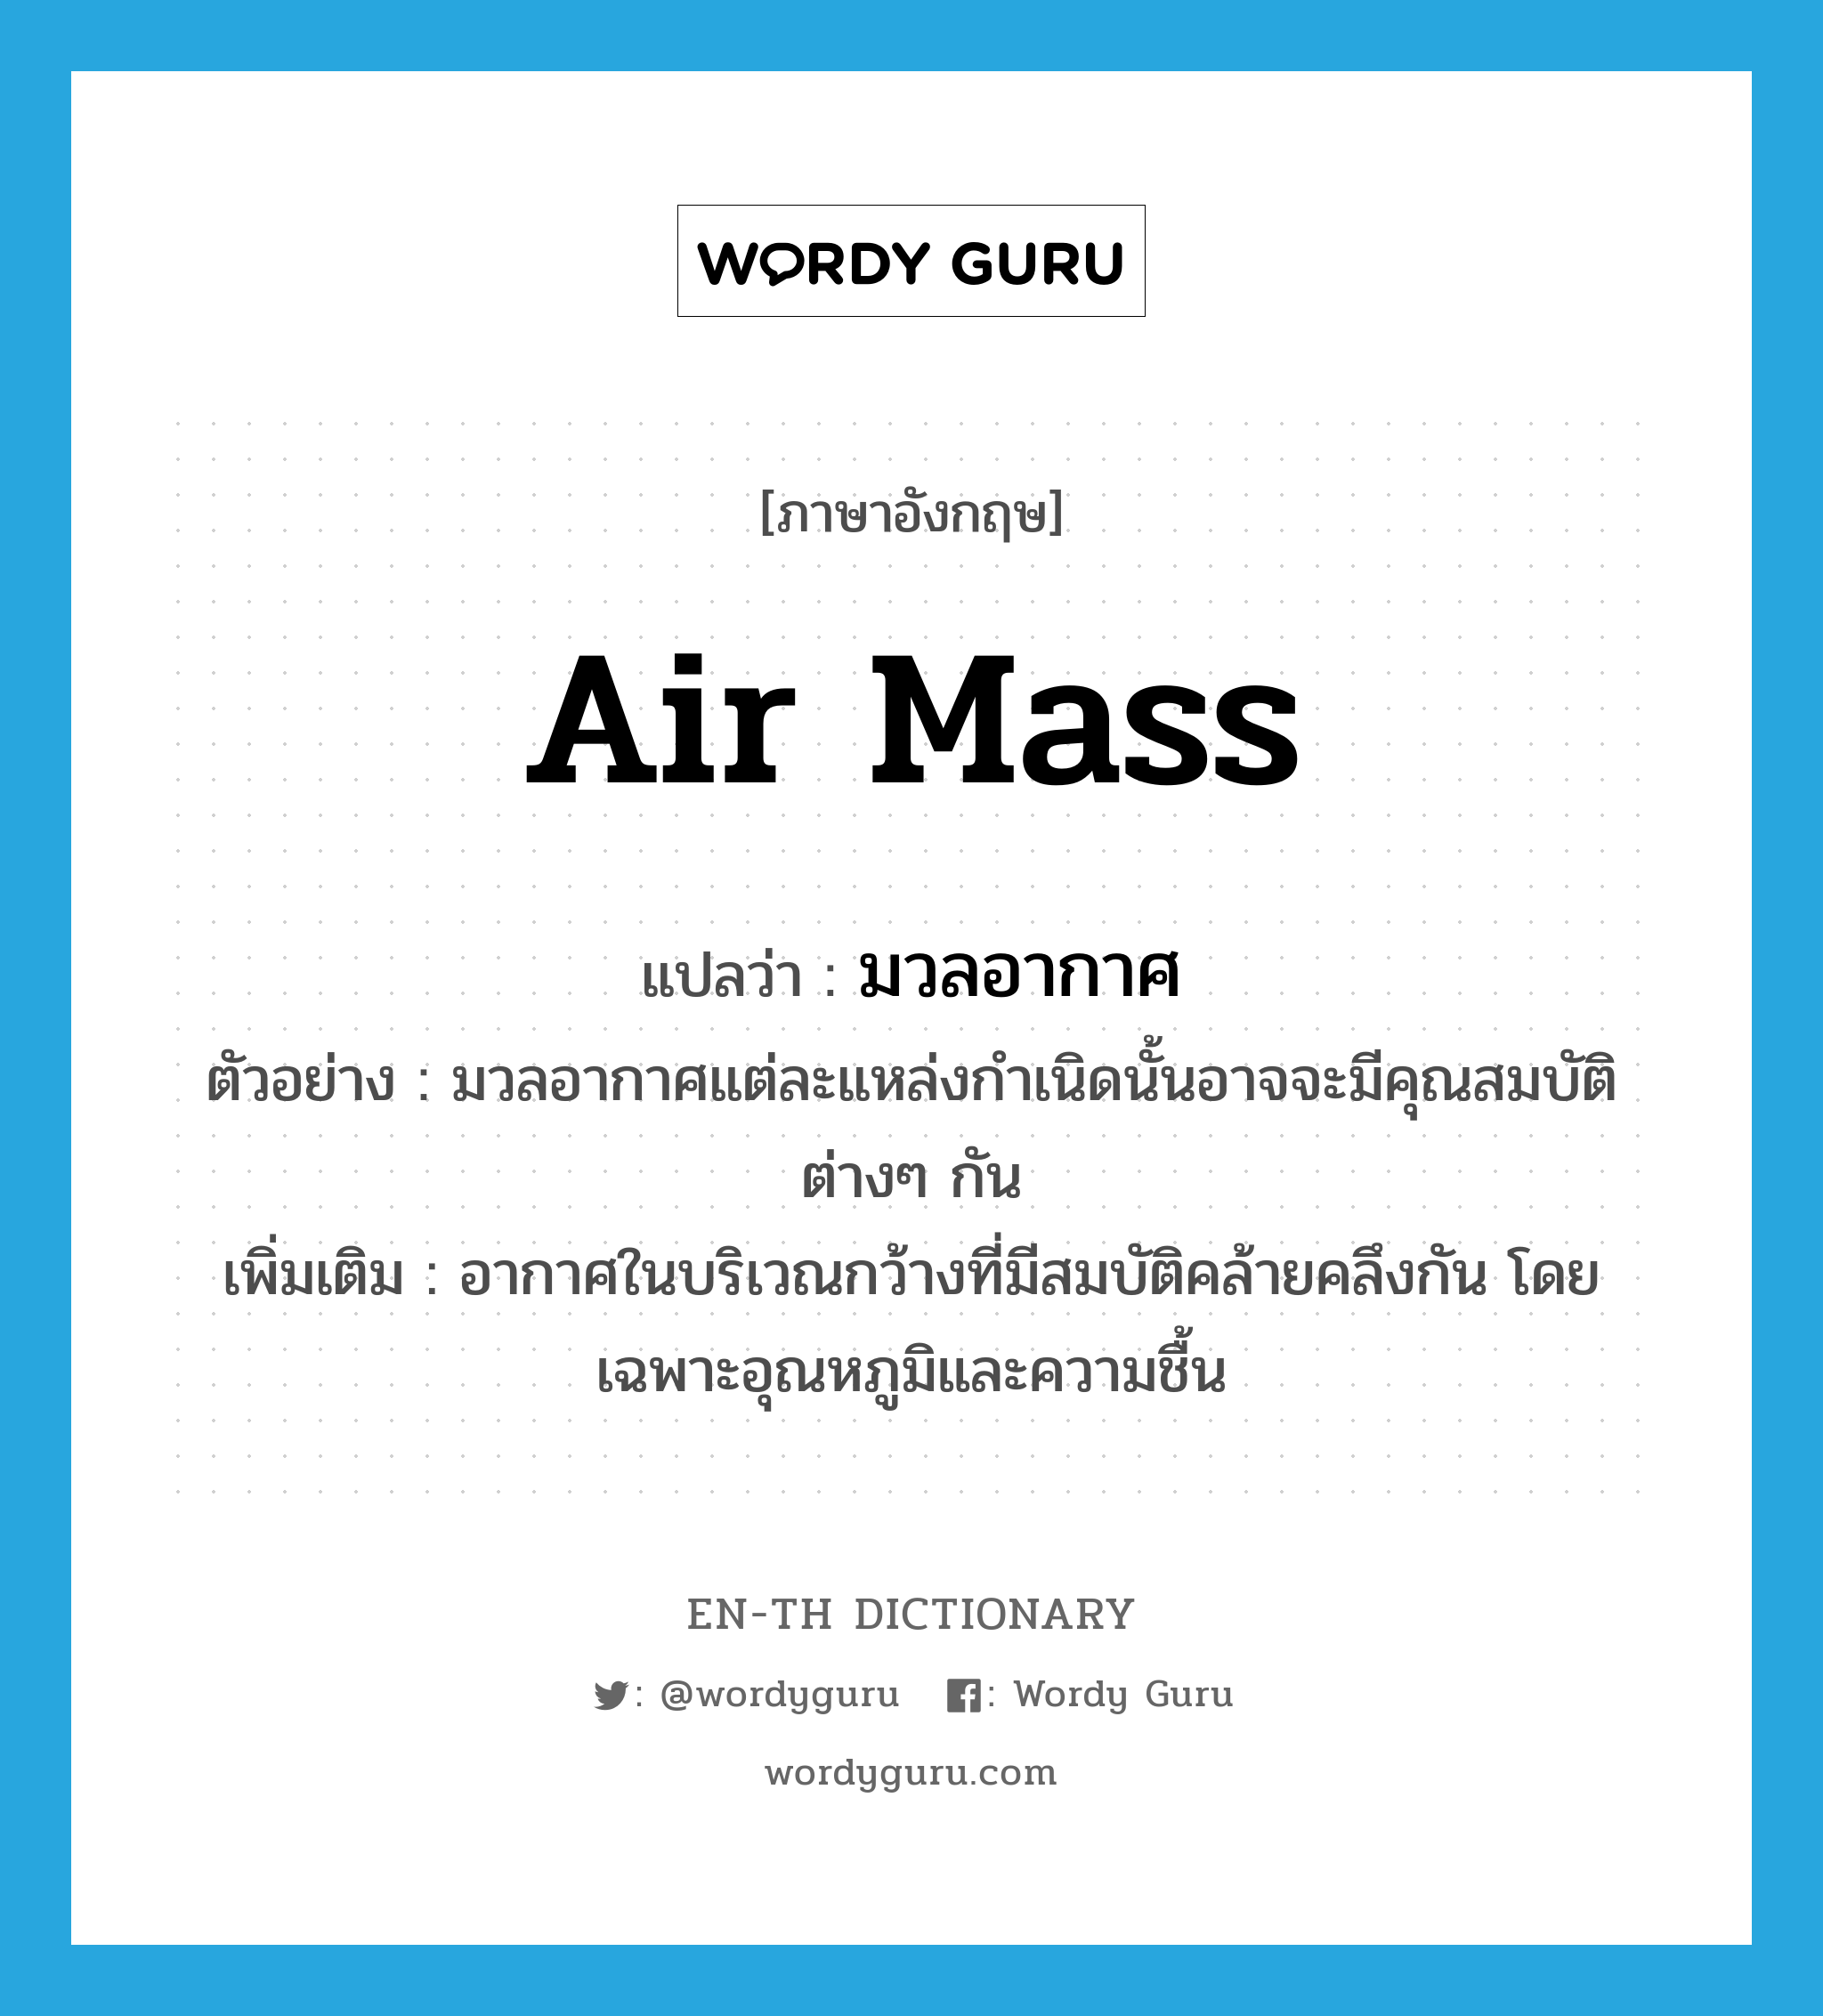 air mass แปลว่า?, คำศัพท์ภาษาอังกฤษ air mass แปลว่า มวลอากาศ ประเภท N ตัวอย่าง มวลอากาศแต่ละแหล่งกำเนิดนั้นอาจจะมีคุณสมบัติต่างๆ กัน เพิ่มเติม อากาศในบริเวณกว้างที่มีสมบัติคล้ายคลึงกัน โดยเฉพาะอุณหภูมิและความชื้น หมวด N